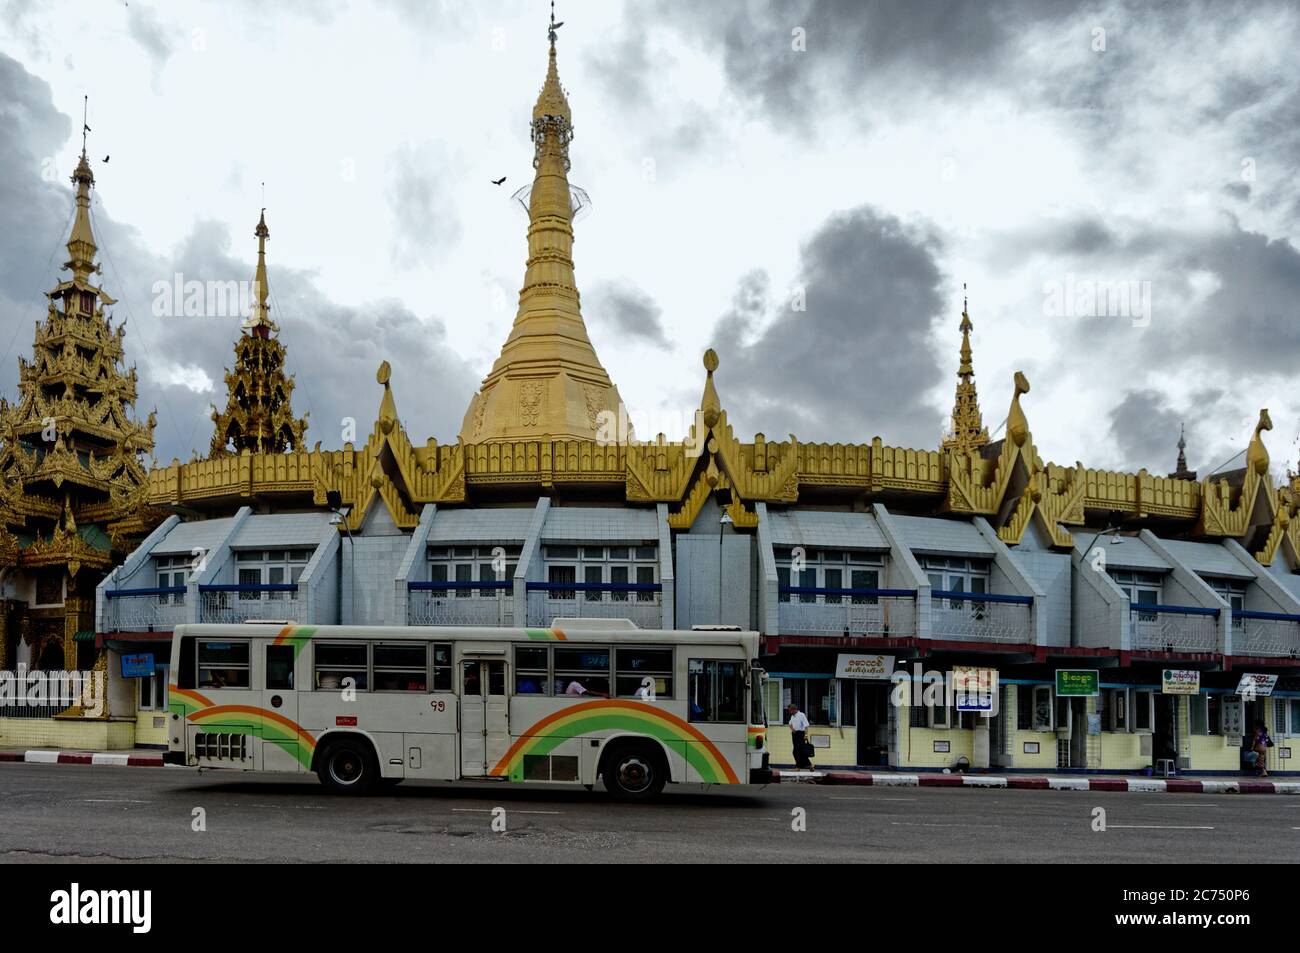 Tiendas y estuplas, el Sule Pagoda en el distrito de Kyauttatar de Yangon, Myanmar Foto de stock